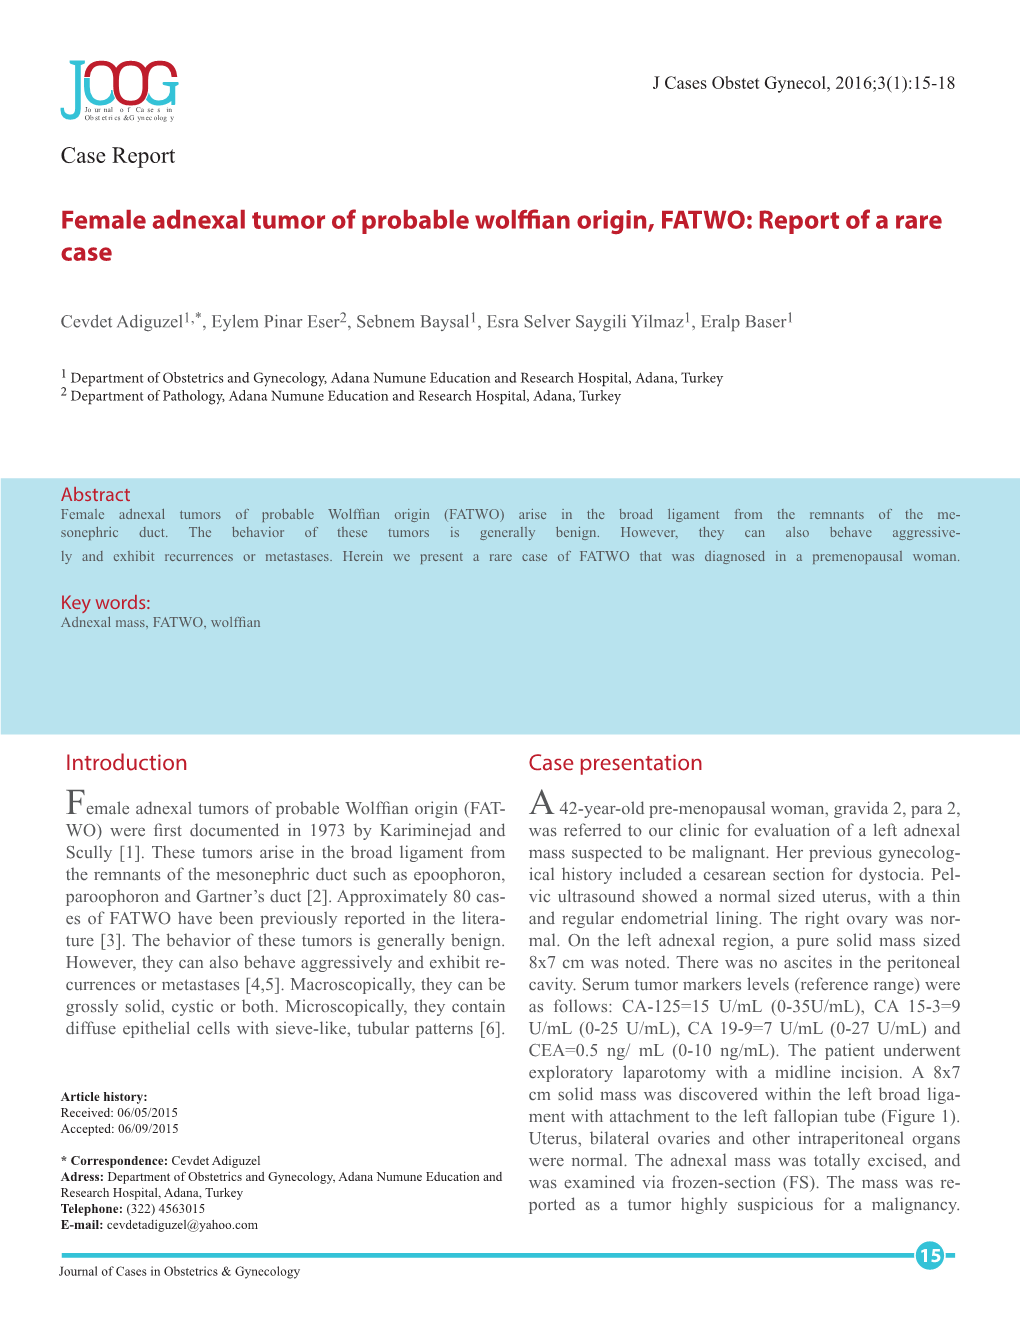 Female Adnexal Tumor of Probable Wolffian Origin, FATWO: Report of a Rare Case